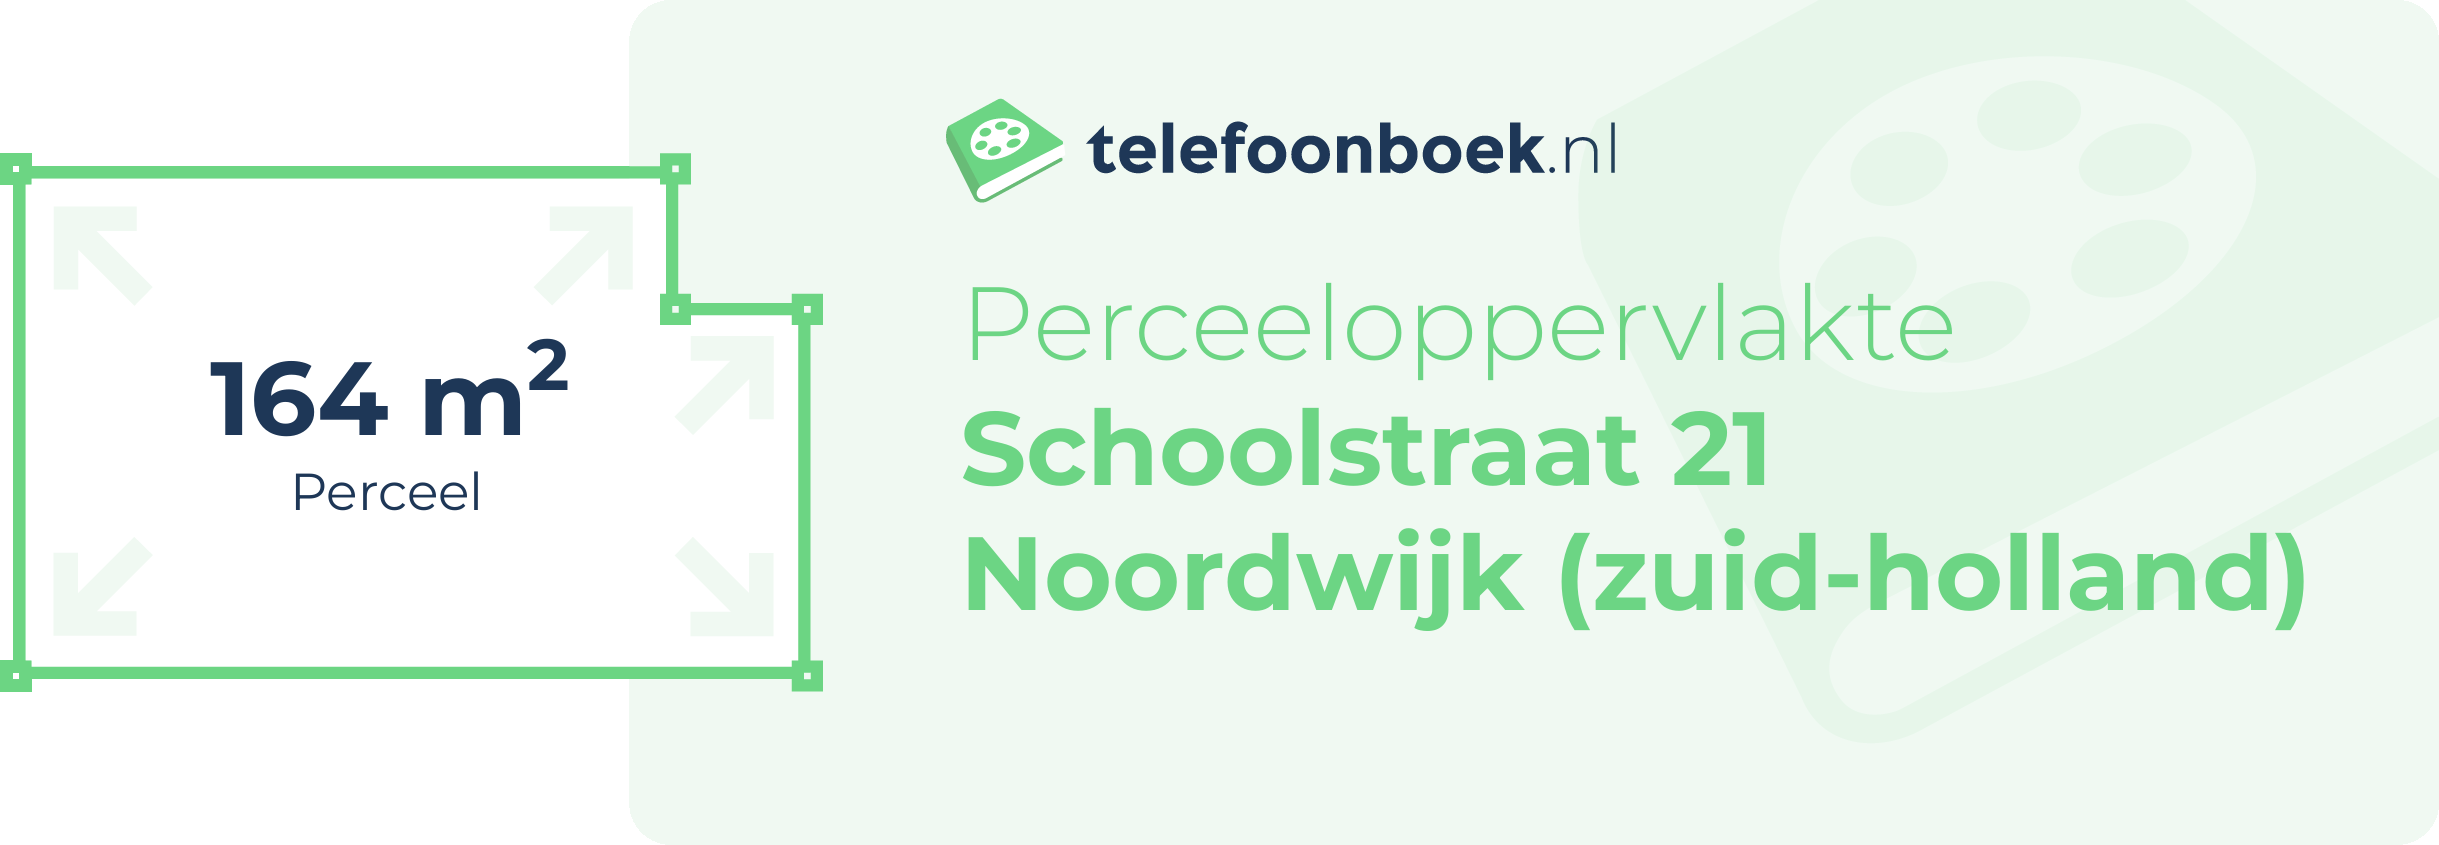 Perceeloppervlakte Schoolstraat 21 Noordwijk (Zuid-Holland)